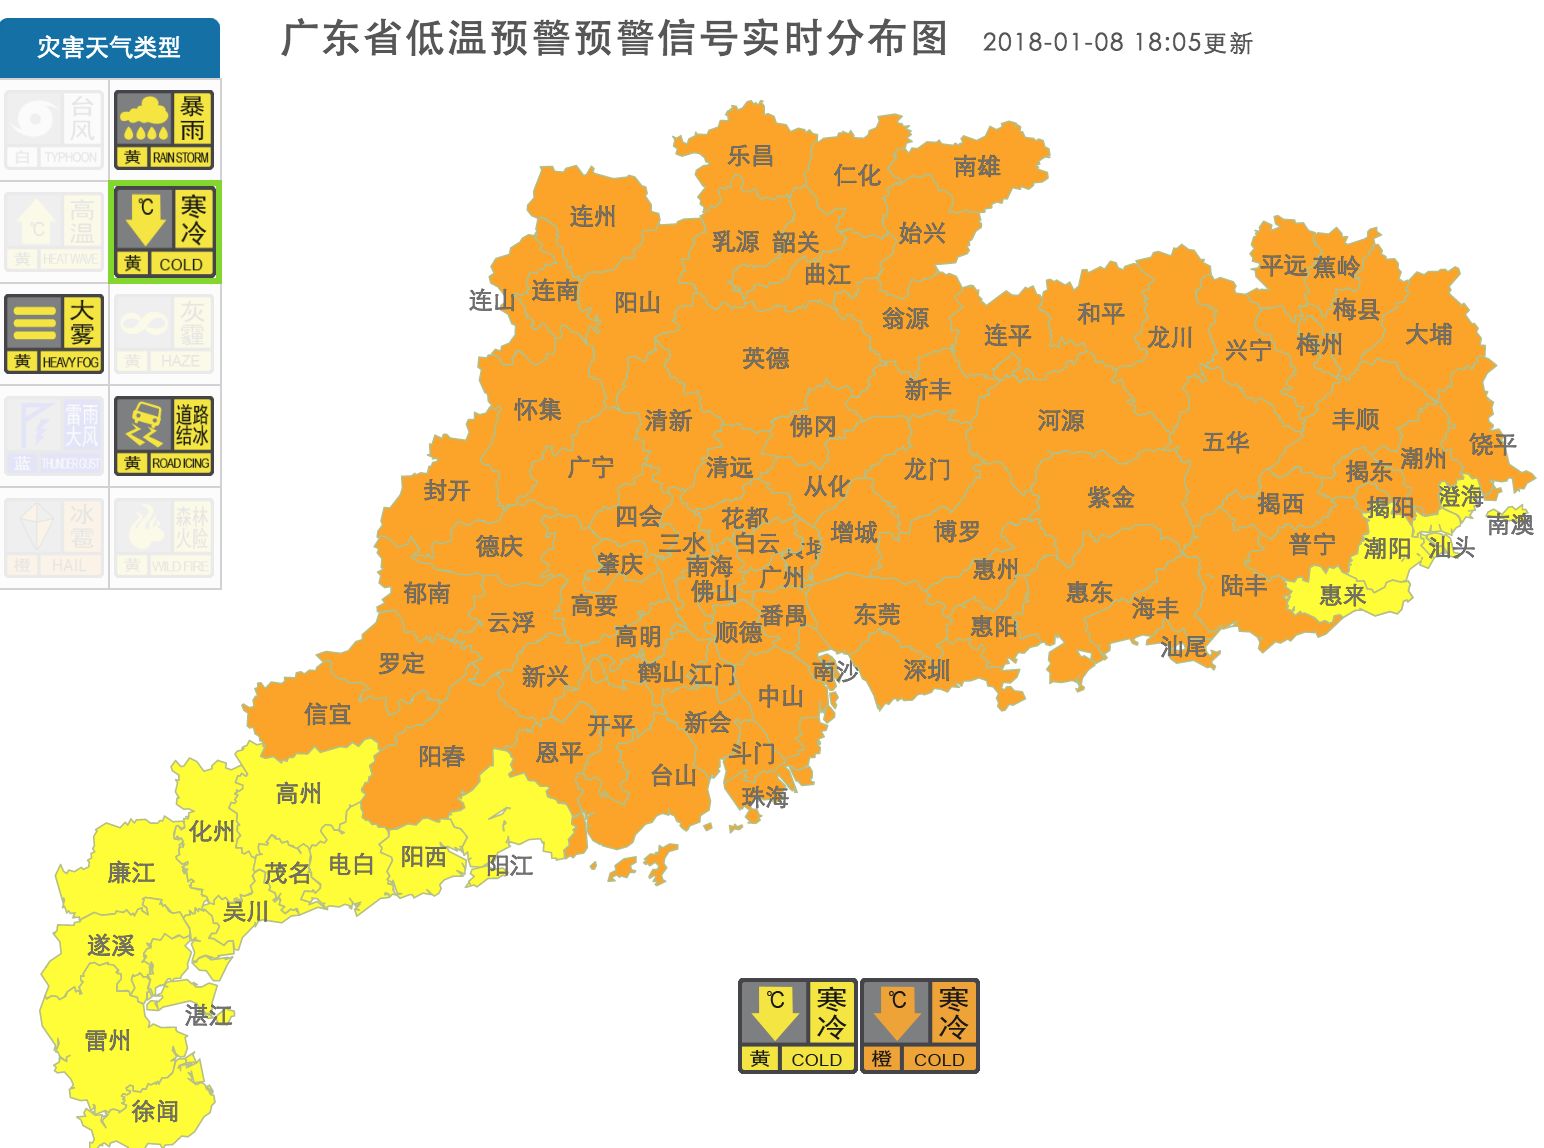 广东省气象台发布低温预警分布图